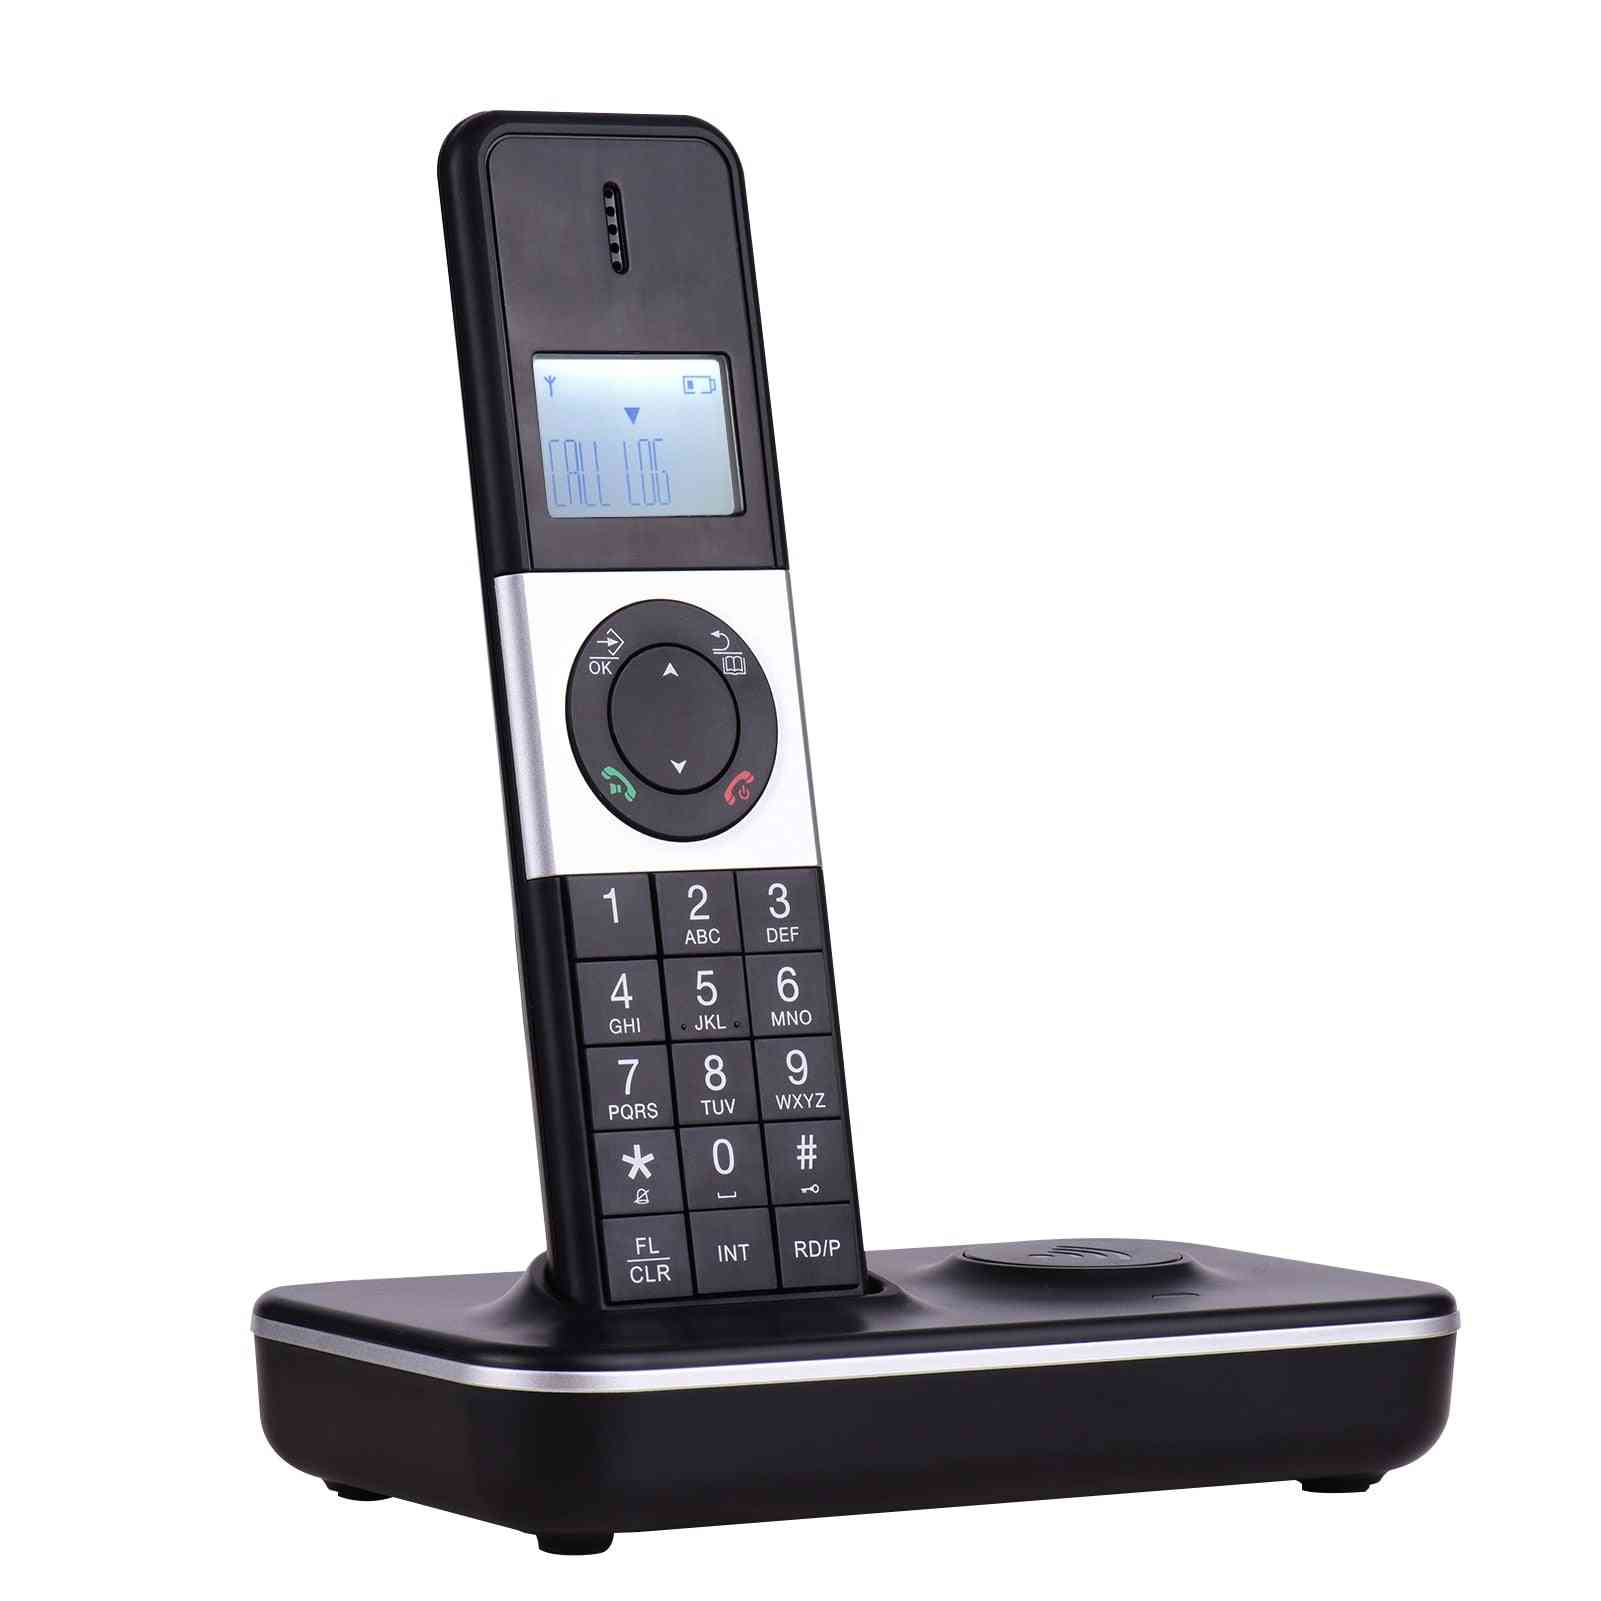 Digitální bezdrátový telefon s LCD displejem ID volajícího hands-free volání